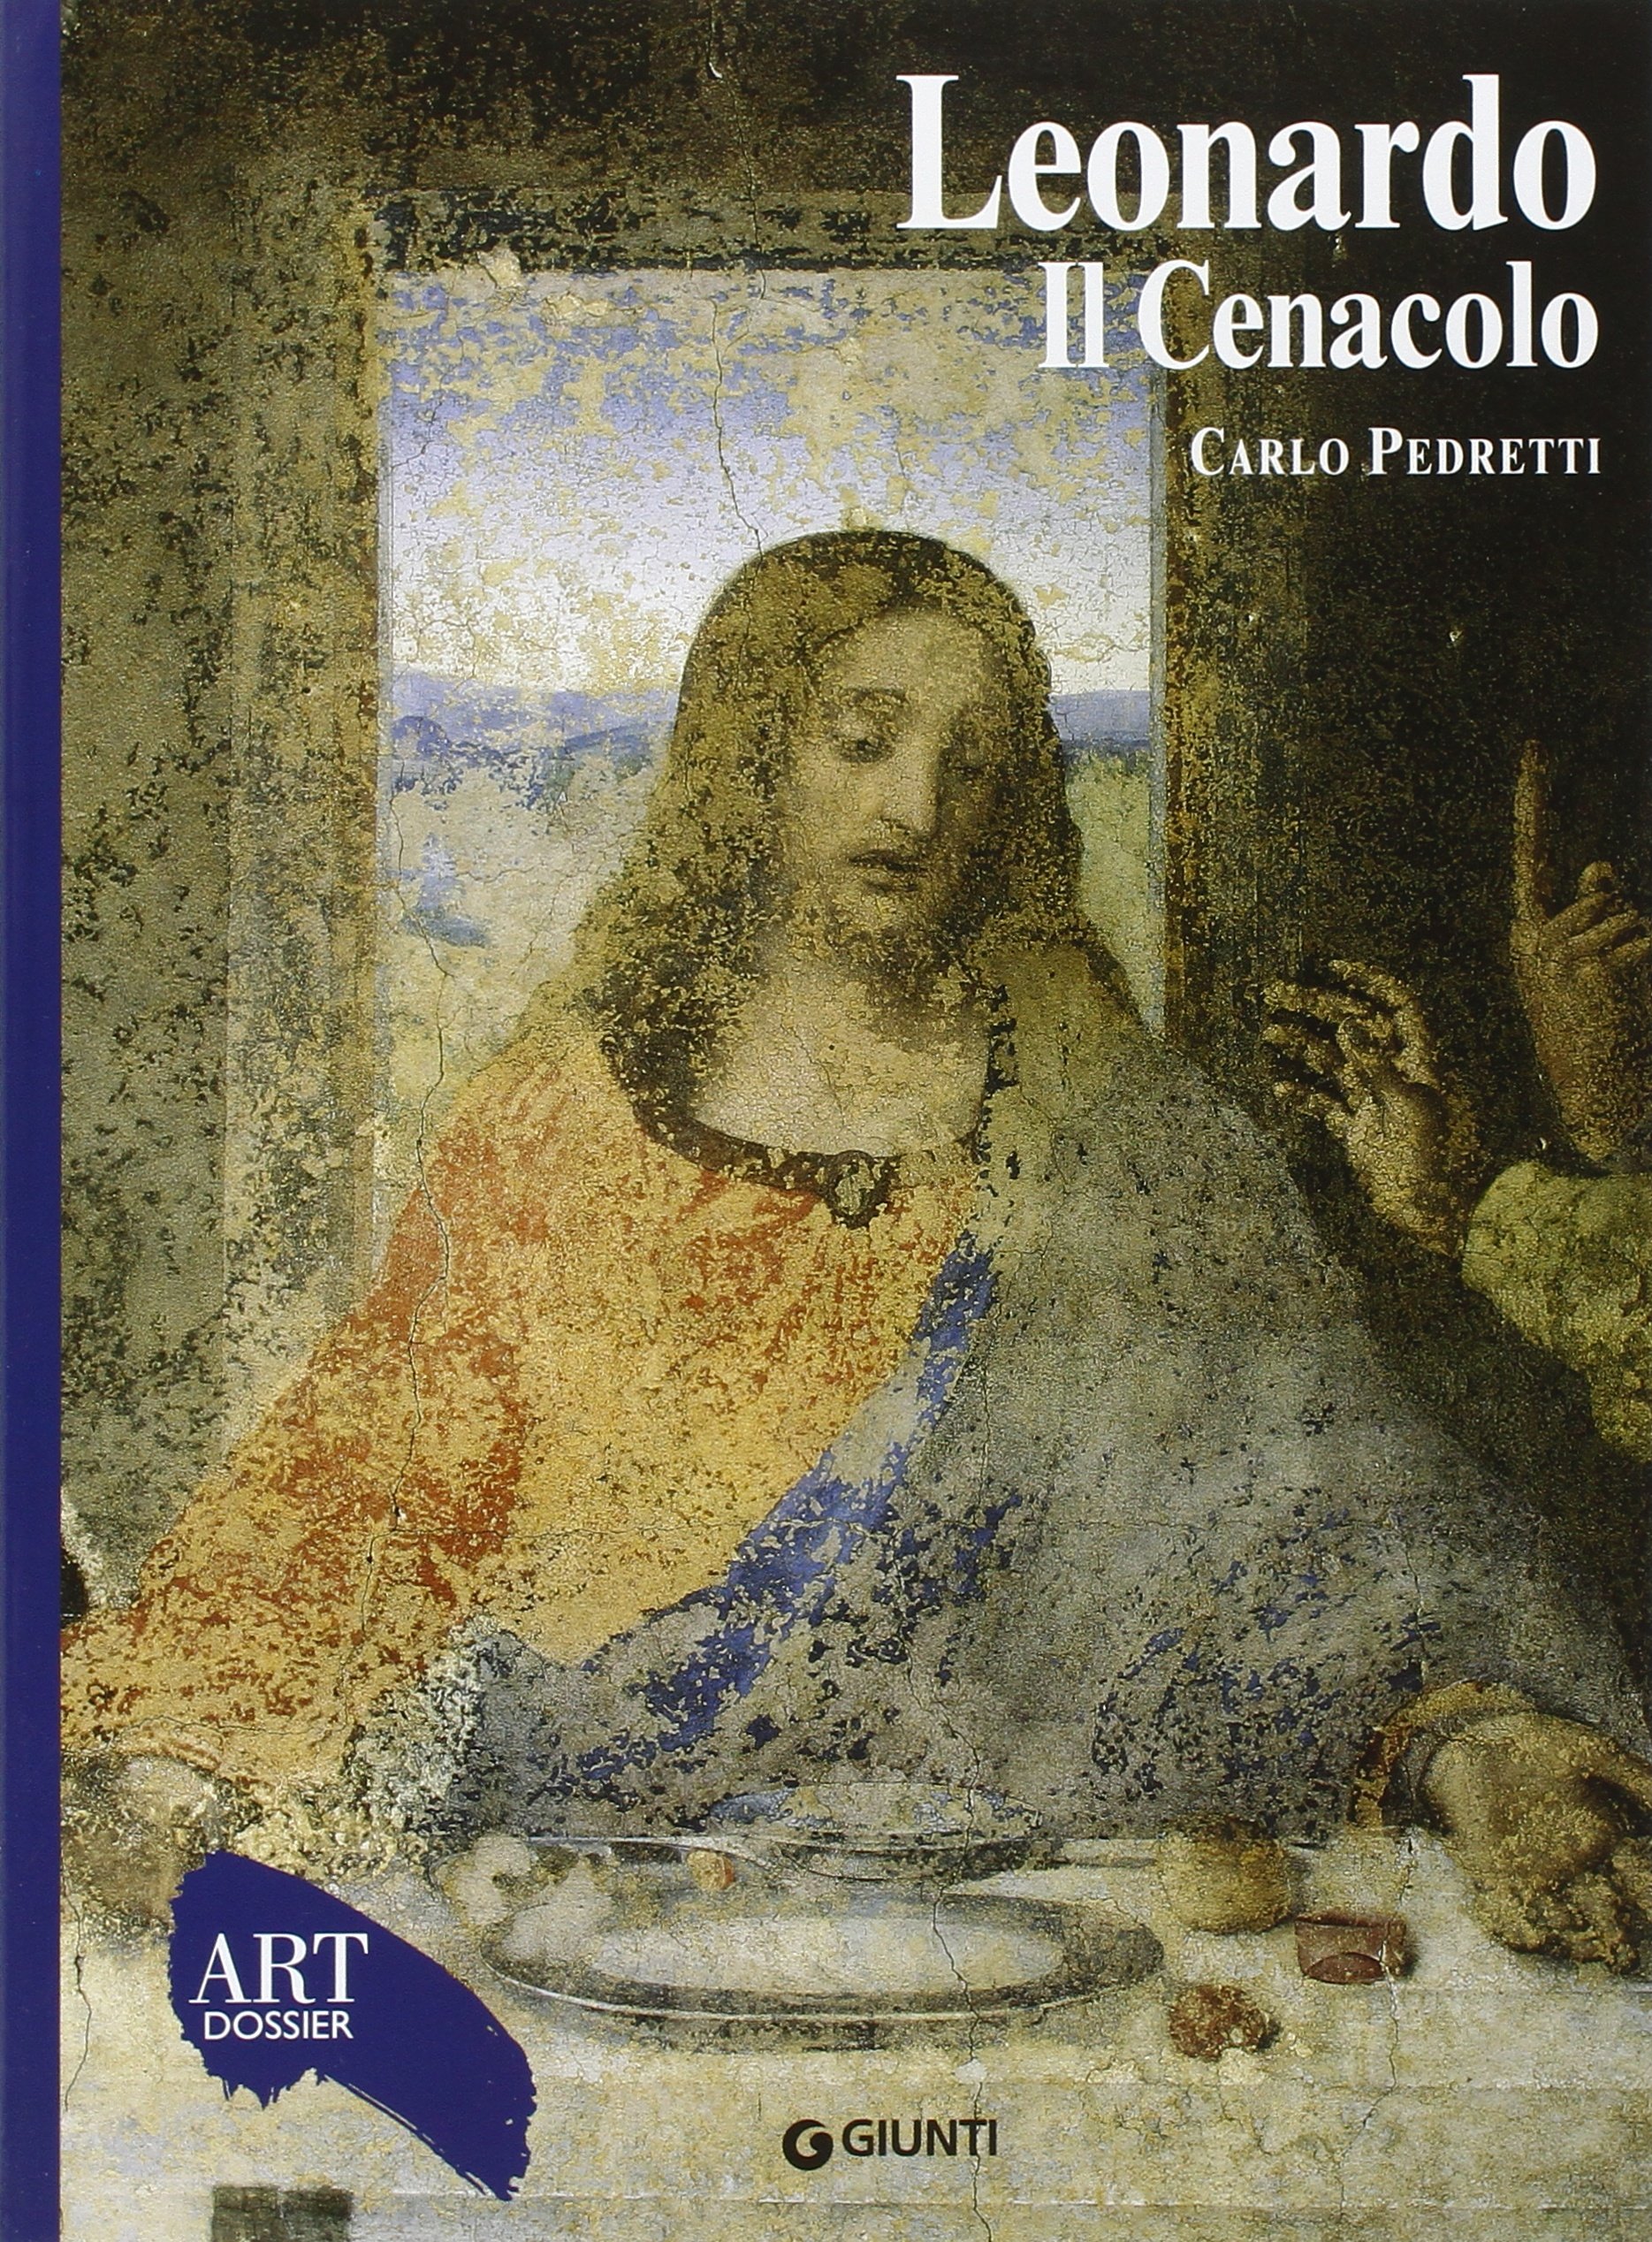 Copertina di Leonardo - Il Cenacolo